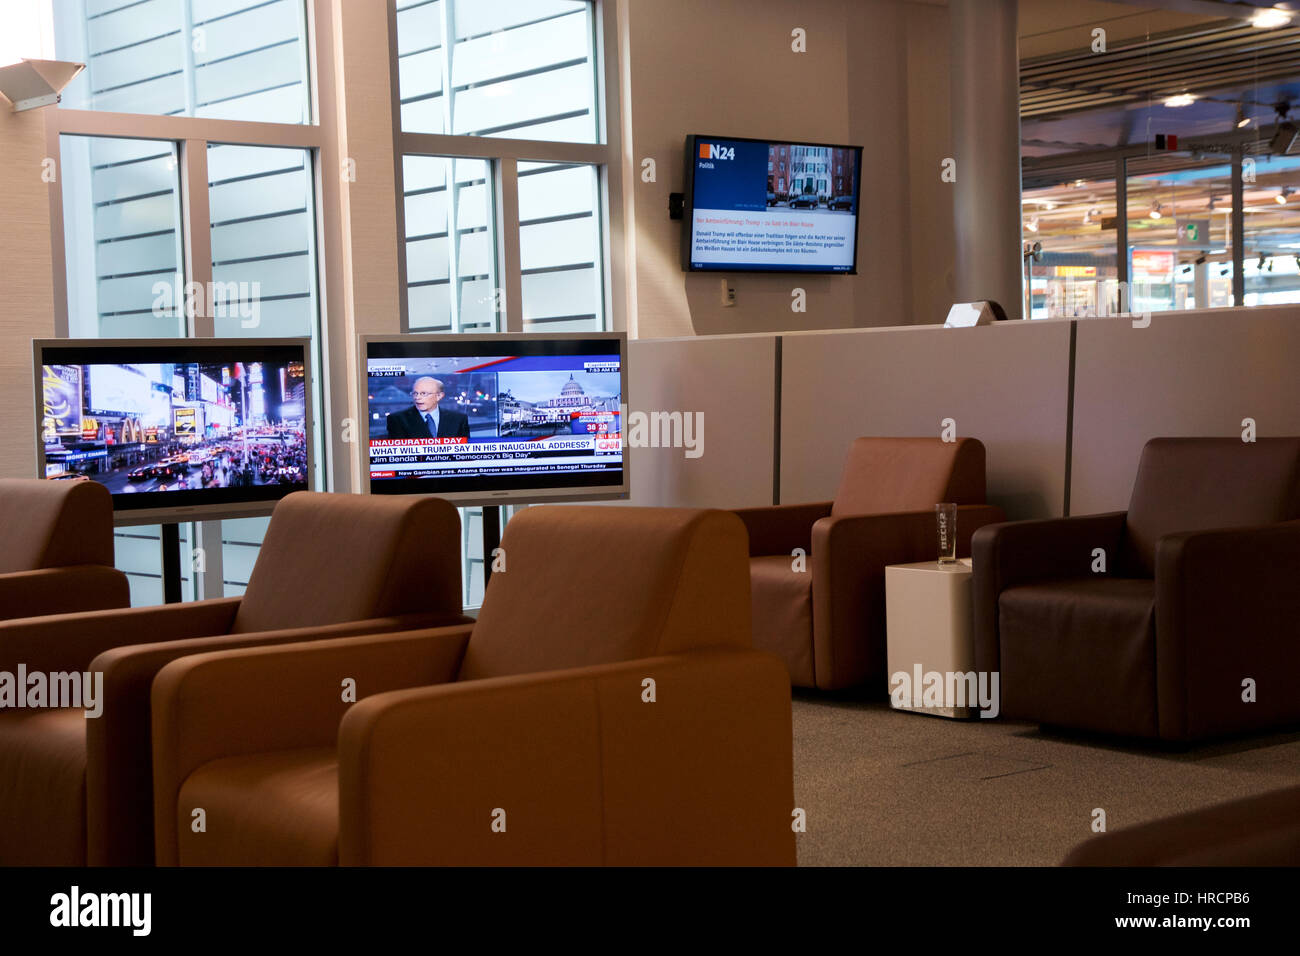 Nürnberg, Deutschland - 20. Januar 2017: Flughafen Interieur, Flughafen Lufthansa Senator Lounge mit Ledersesseln und LCD-TV mit News-Programm Stockfoto